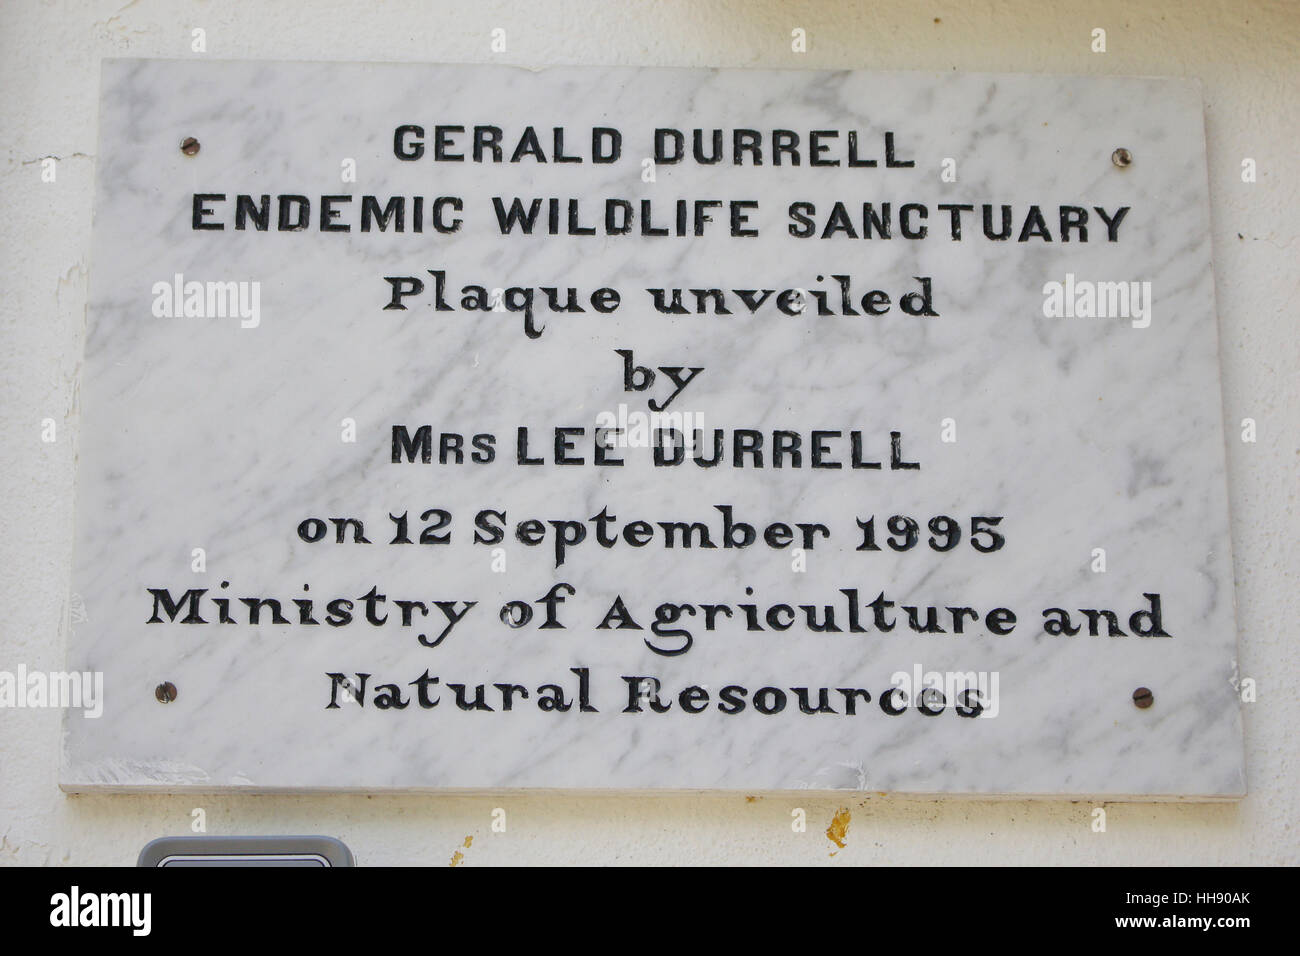 Le sanctuaire de la faune endémique Gerald Durrell est un sanctuaire d'animaux fondé en 1984, Banque D'Images